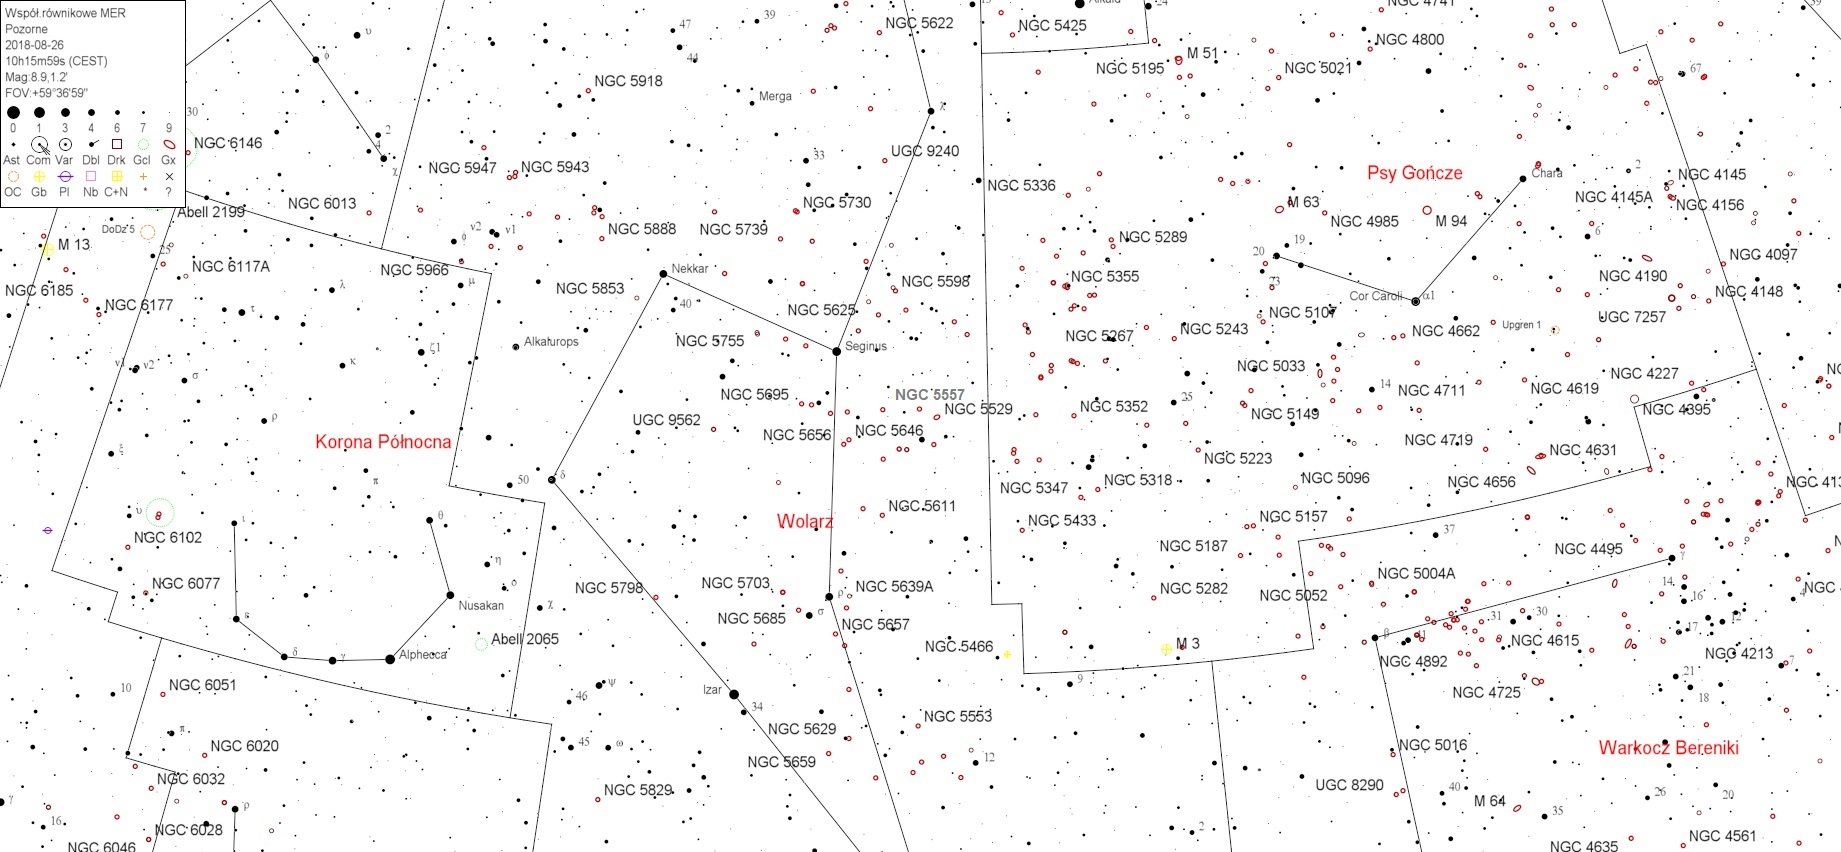 NGC5557v3.jpg